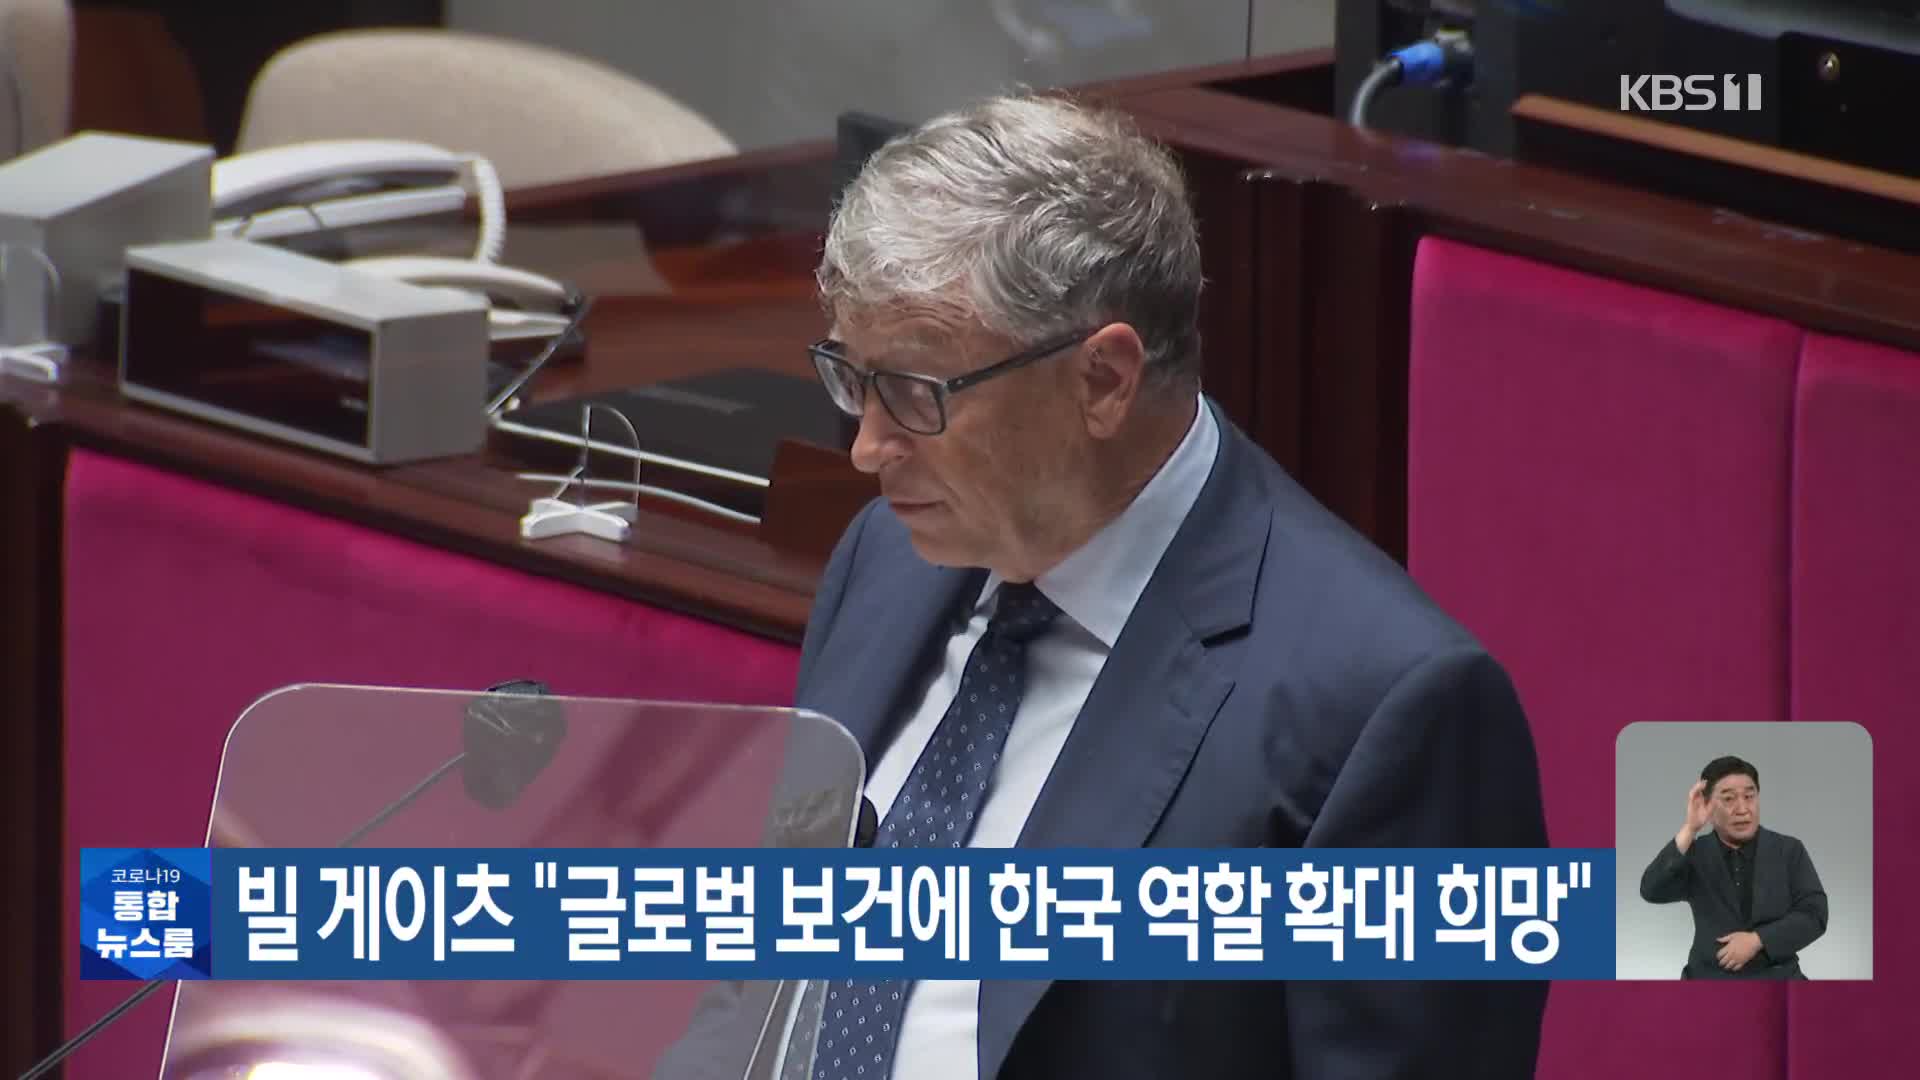 빌 게이츠 “글로벌 보건에 한국 역할 확대 희망”